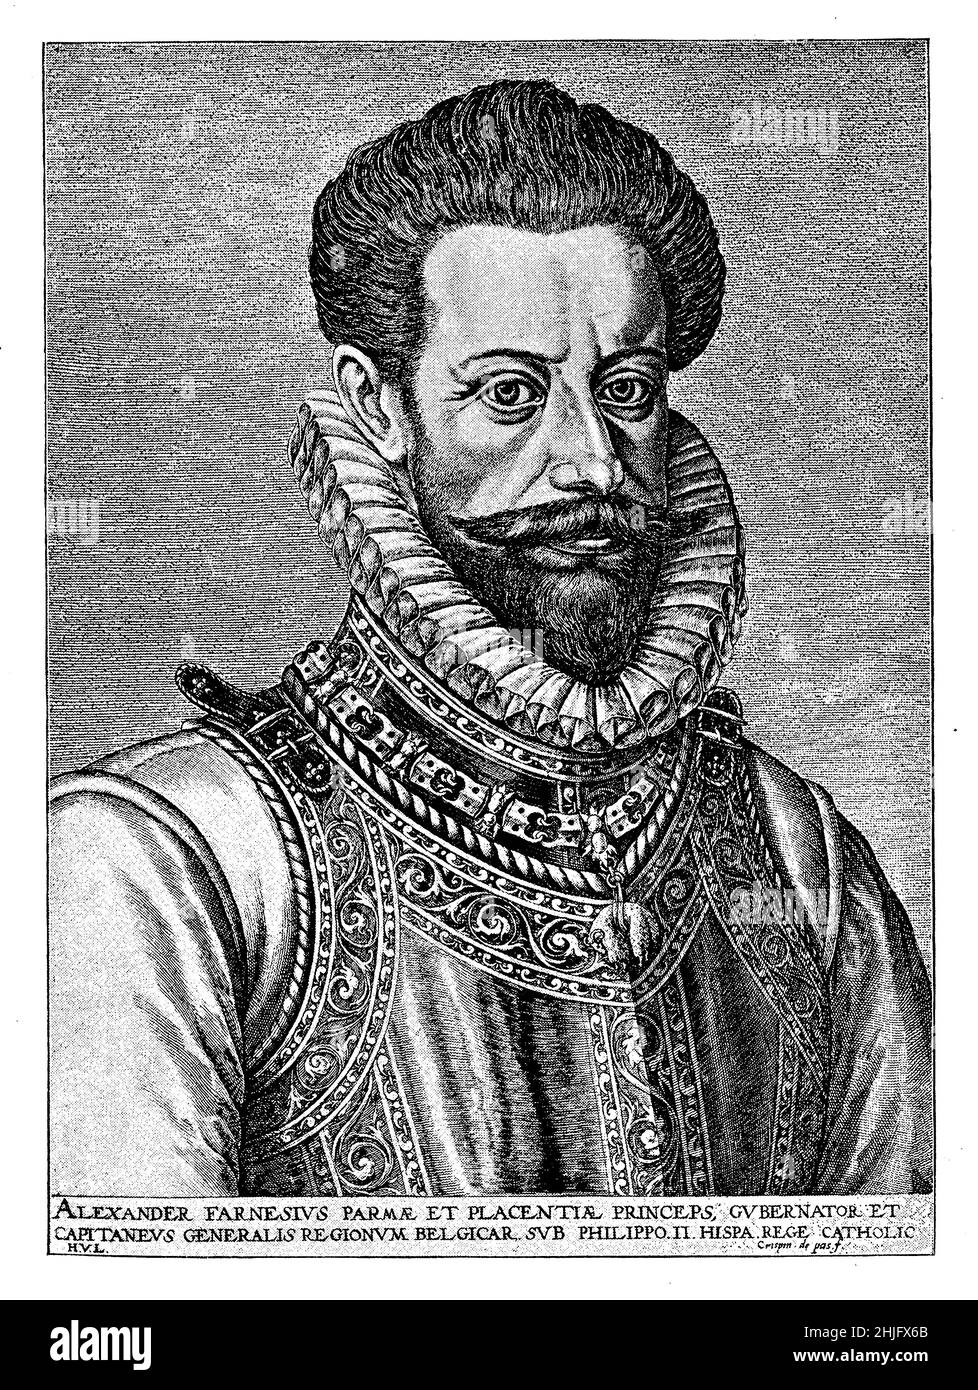 Portrait d'Alessandro Farnese (1545 - 1592) Duc de Parme, Piacenza et Castro, noble italien, général de l'armée espagnole et gouverneur des pays-Bas espagnols Banque D'Images